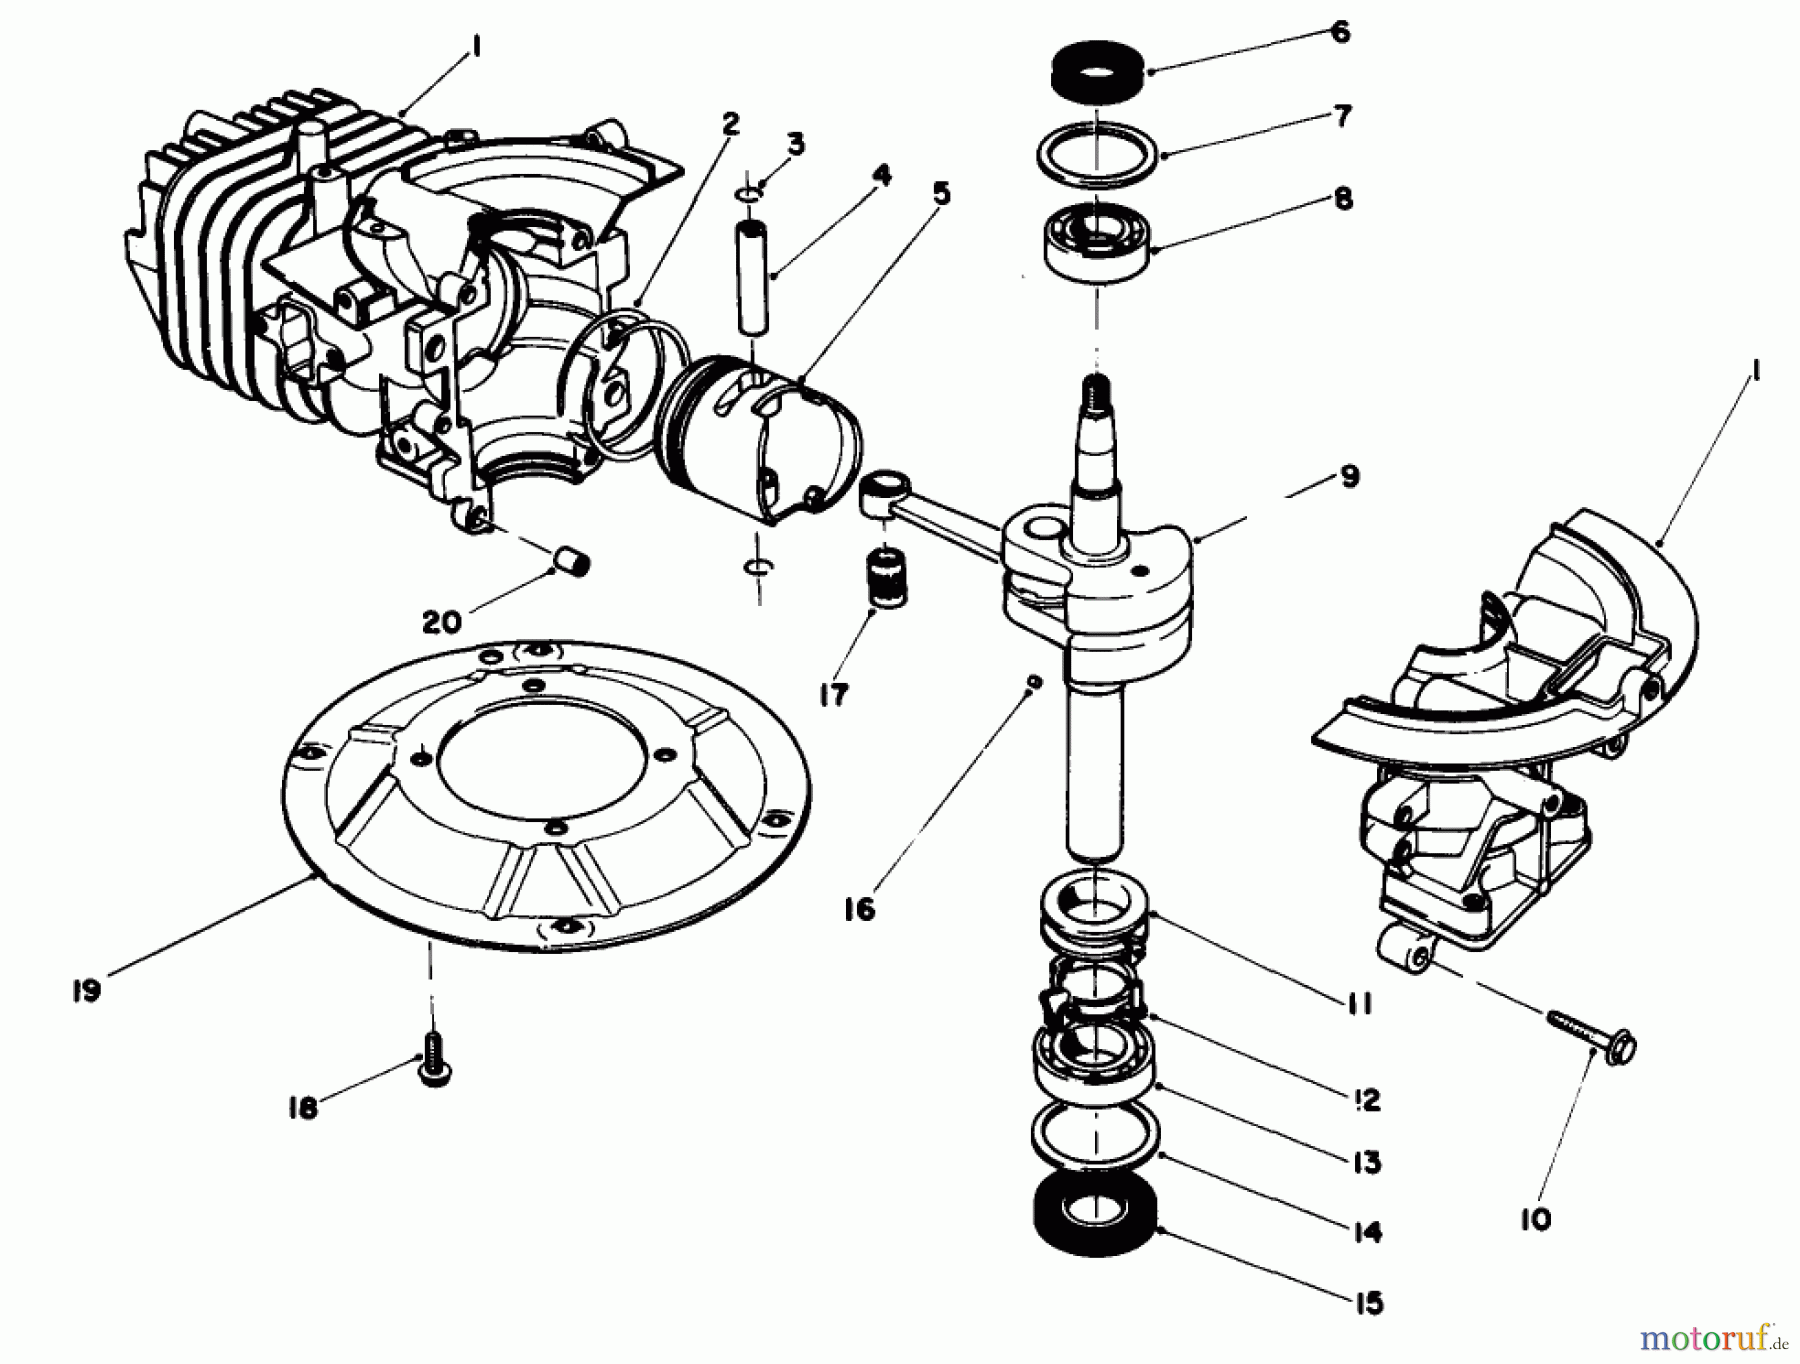  Toro Neu Mowers, Walk-Behind Seite 2 22035 - Toro Lawnmower, 1988 (8002990-8999999) ENGINE ASSEMBLY MODEL NO. 47PH7 #1